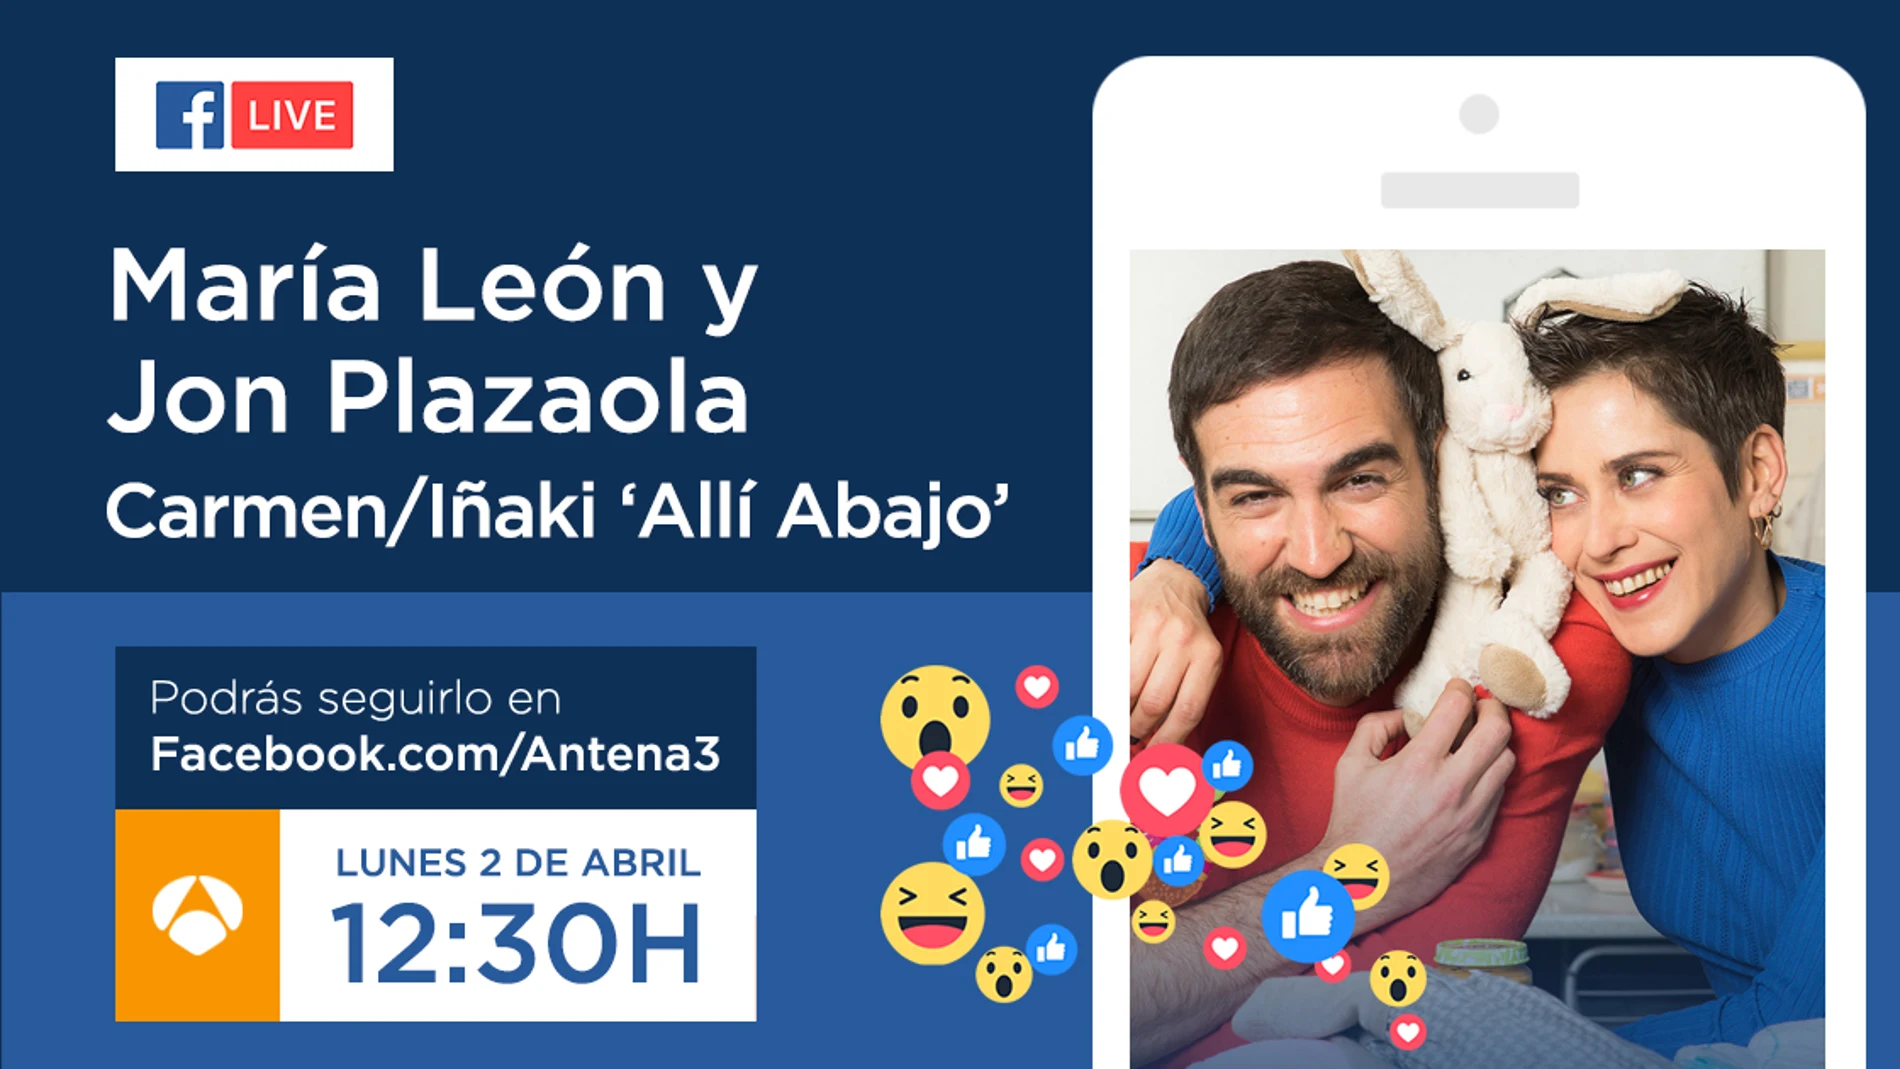 Jon Plazaola y María León, el lunes a las 12:30 en Facebook Live